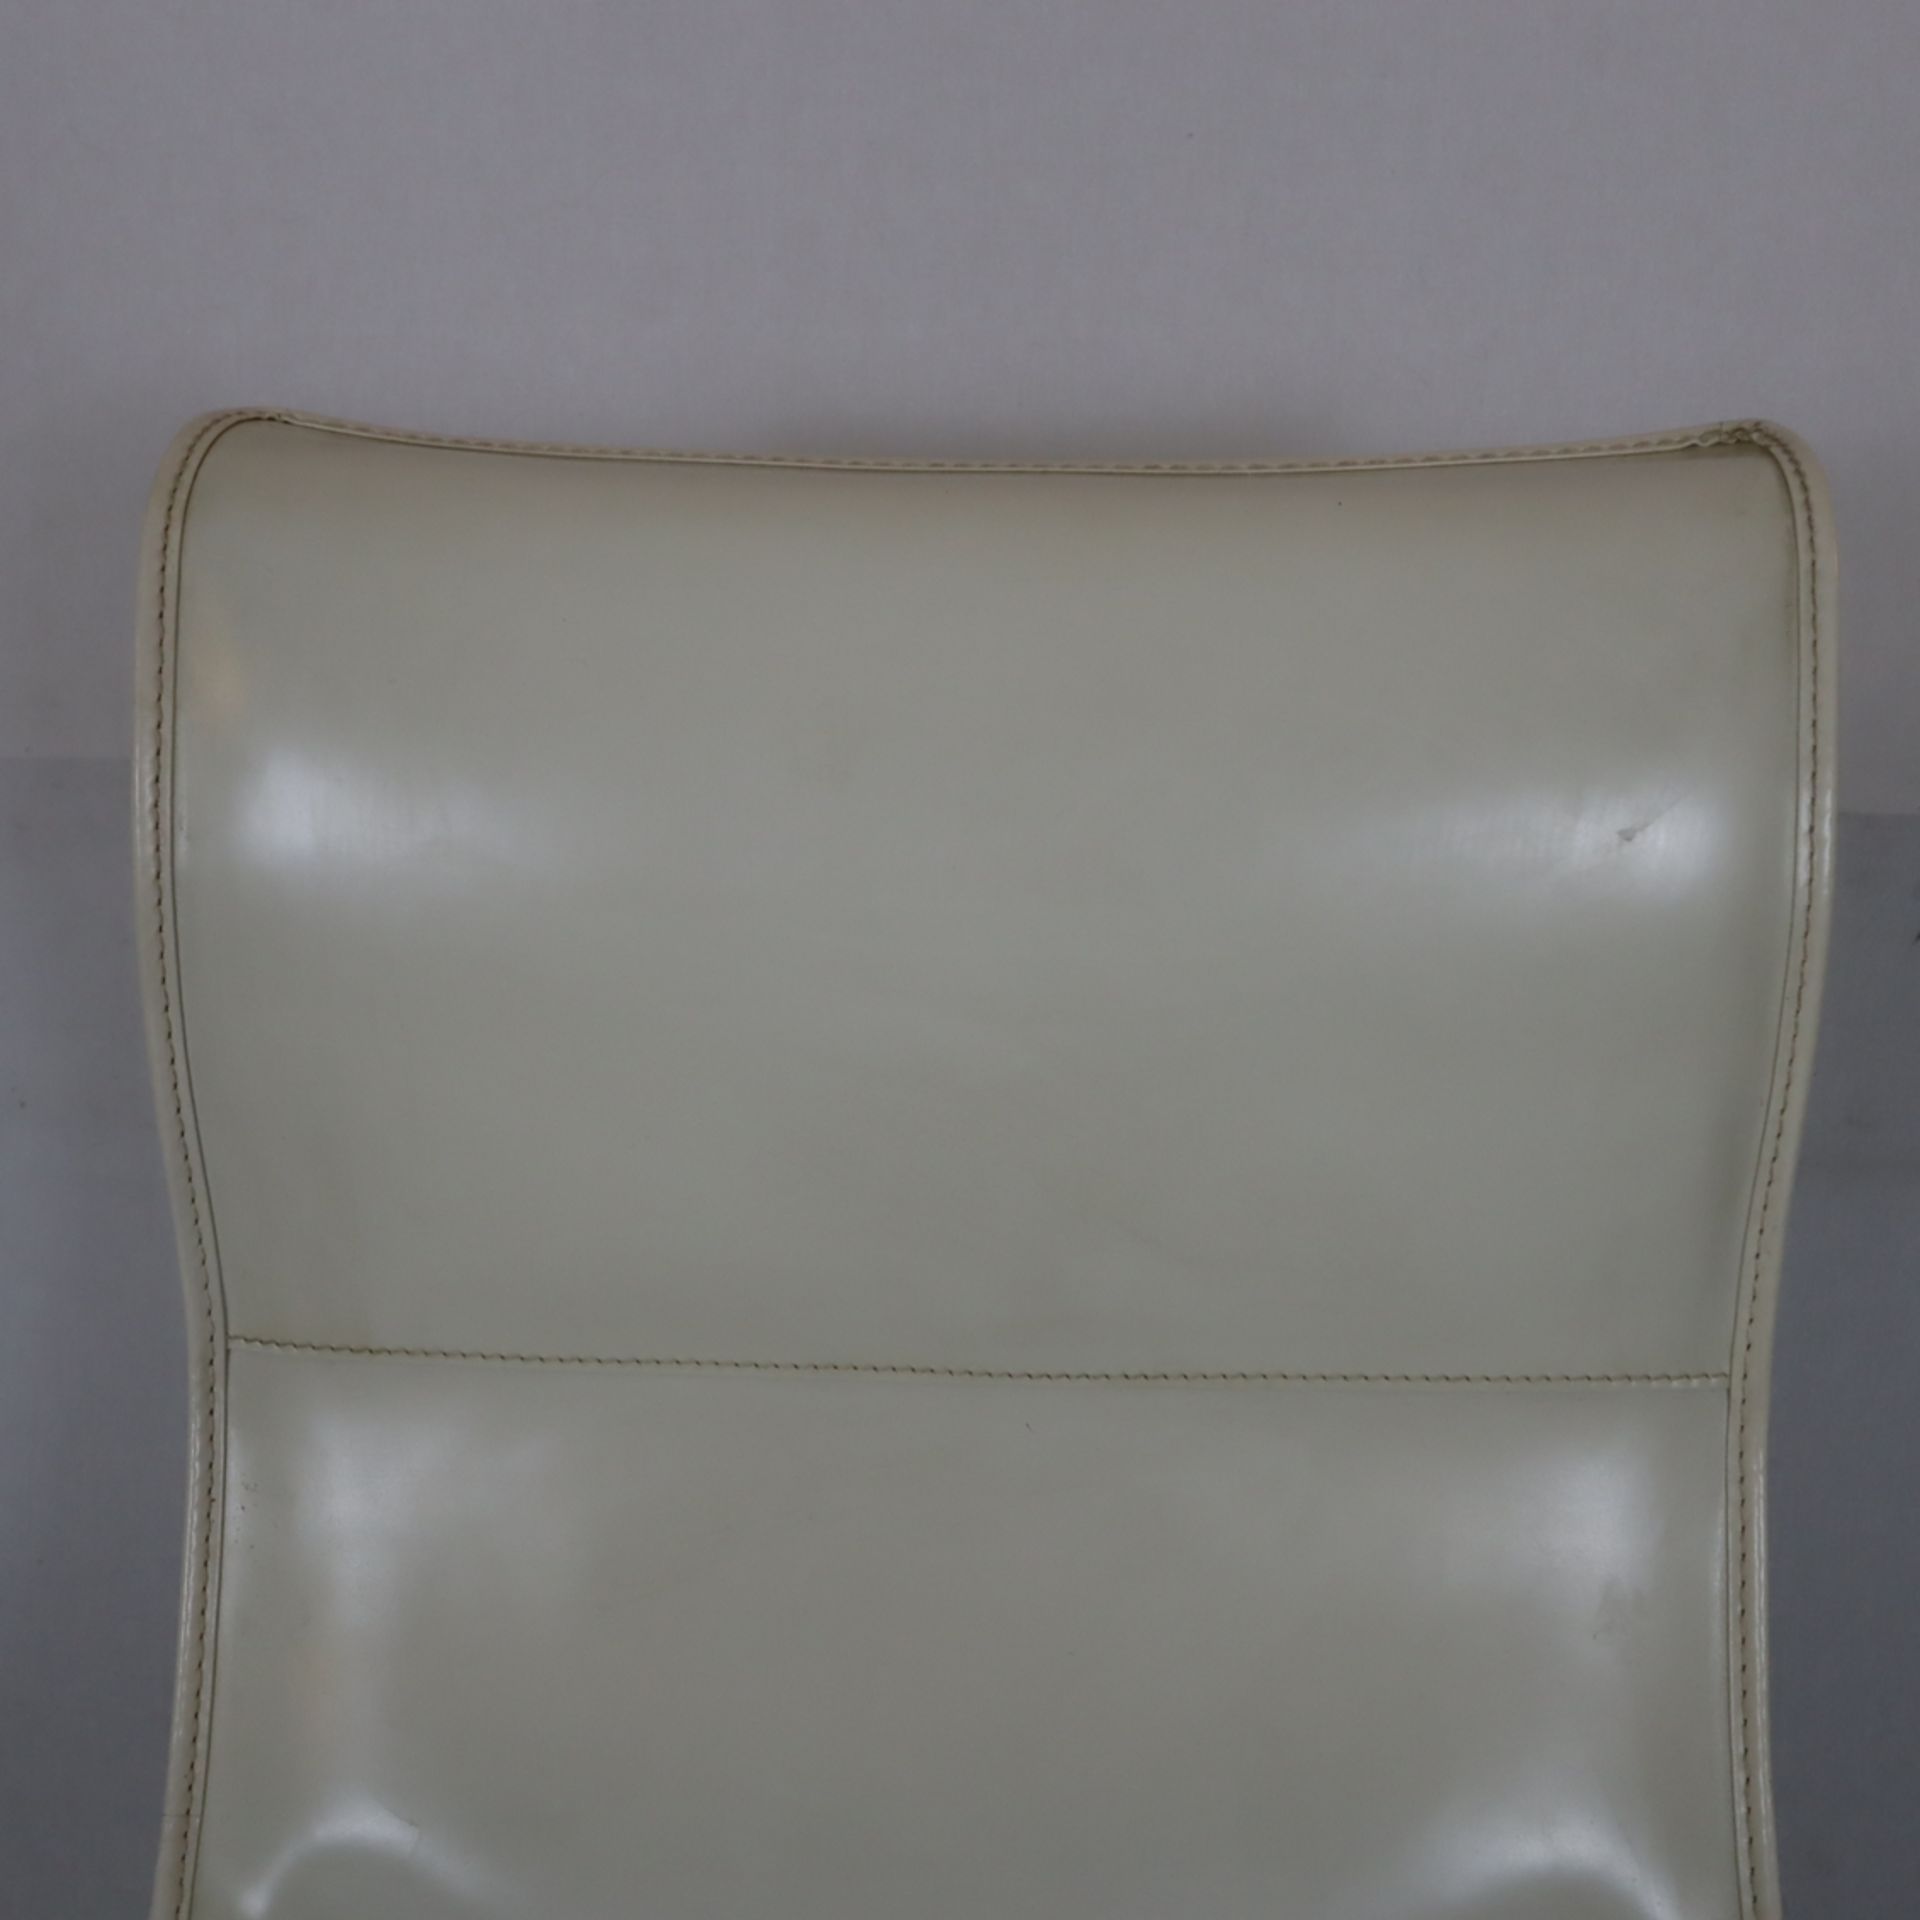 Lounge-Sessel mit Ottomane - Modell "Progetti", Entwurf: Umberto Asnago (1987), Ausführung: Giorget - Bild 3 aus 14